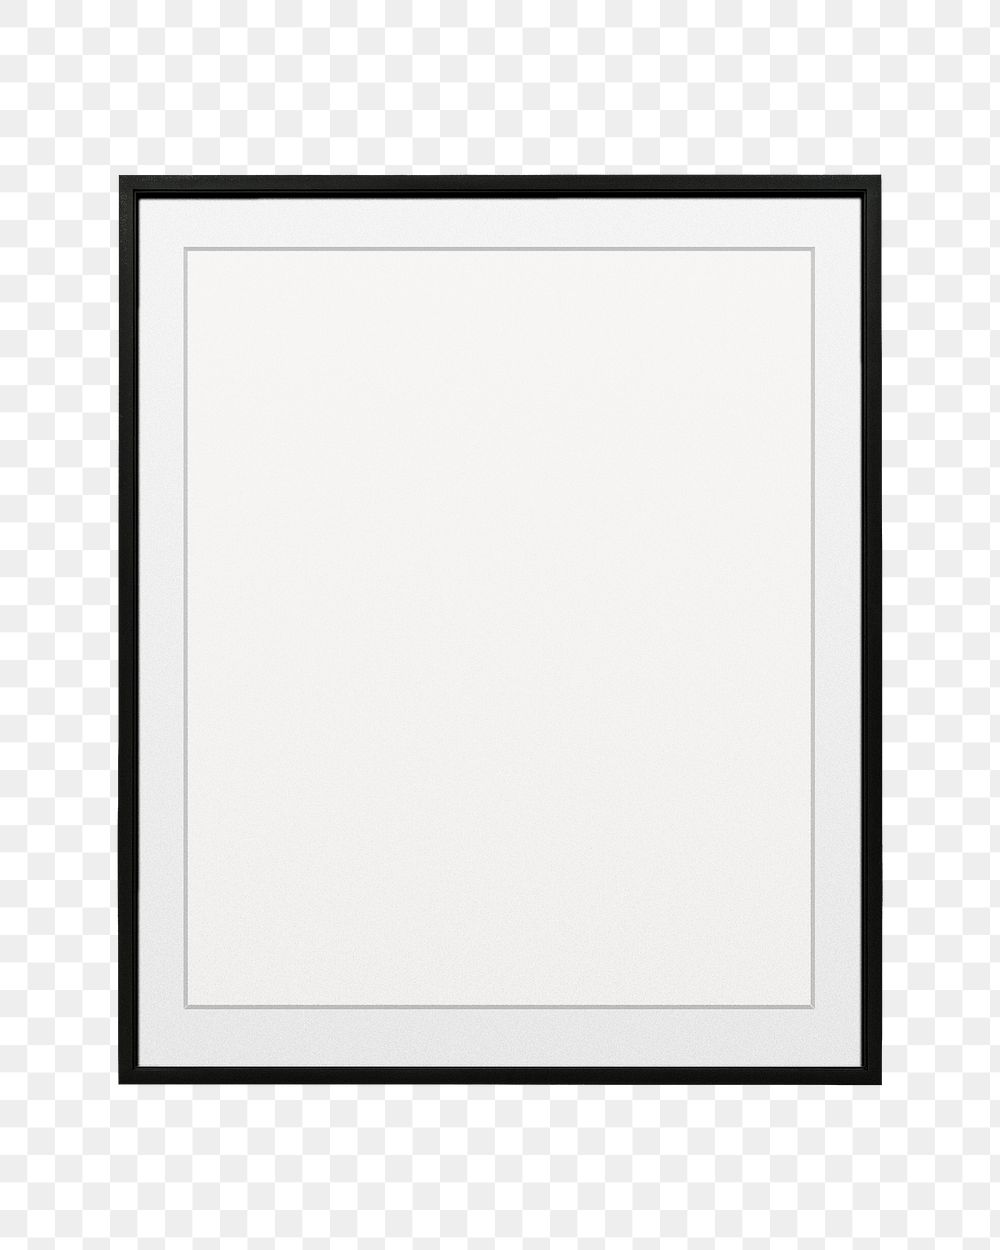 Black picture frame  png sticker, transparent background